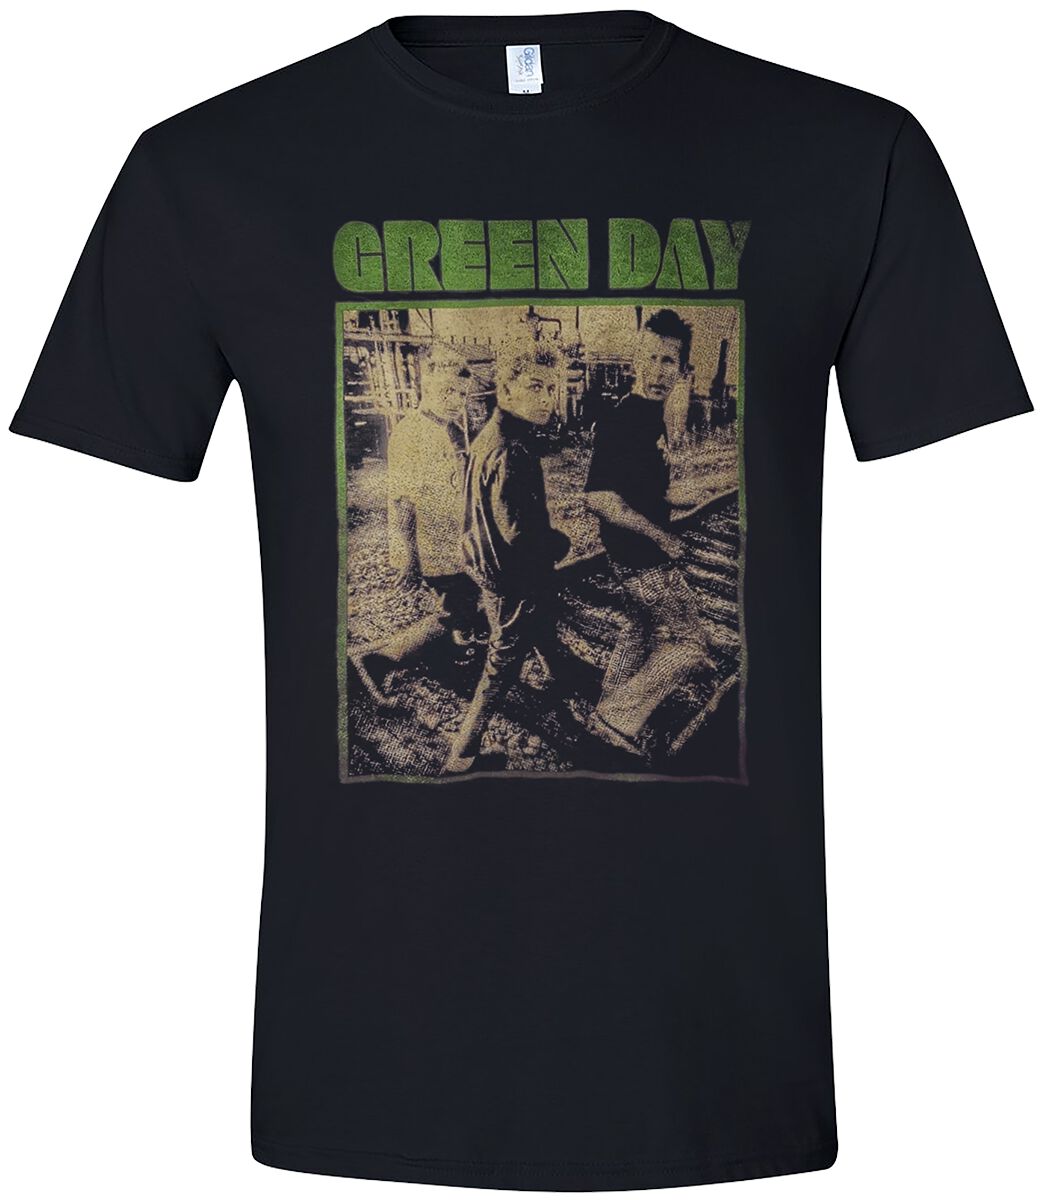 Green Day T-Shirt - Train Tracks Revolution - S bis XL - für Männer - Größe XL - schwarz  - Lizenziertes Merchandise!